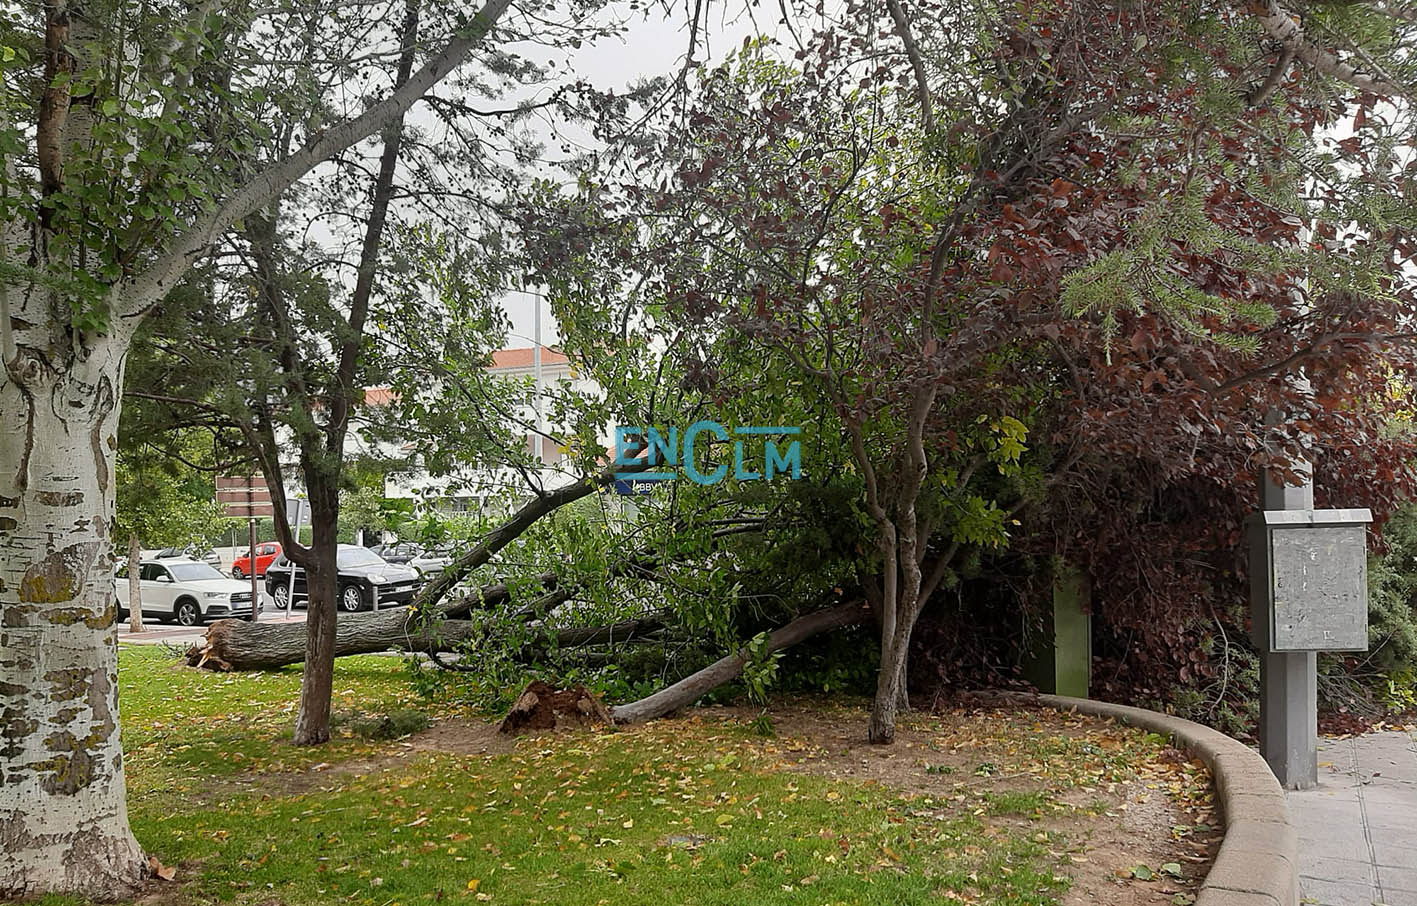 Cae un árbol sobre un coche en Toledo, dos en el Polígono, ramas en una gran  avenida… - ENCLM